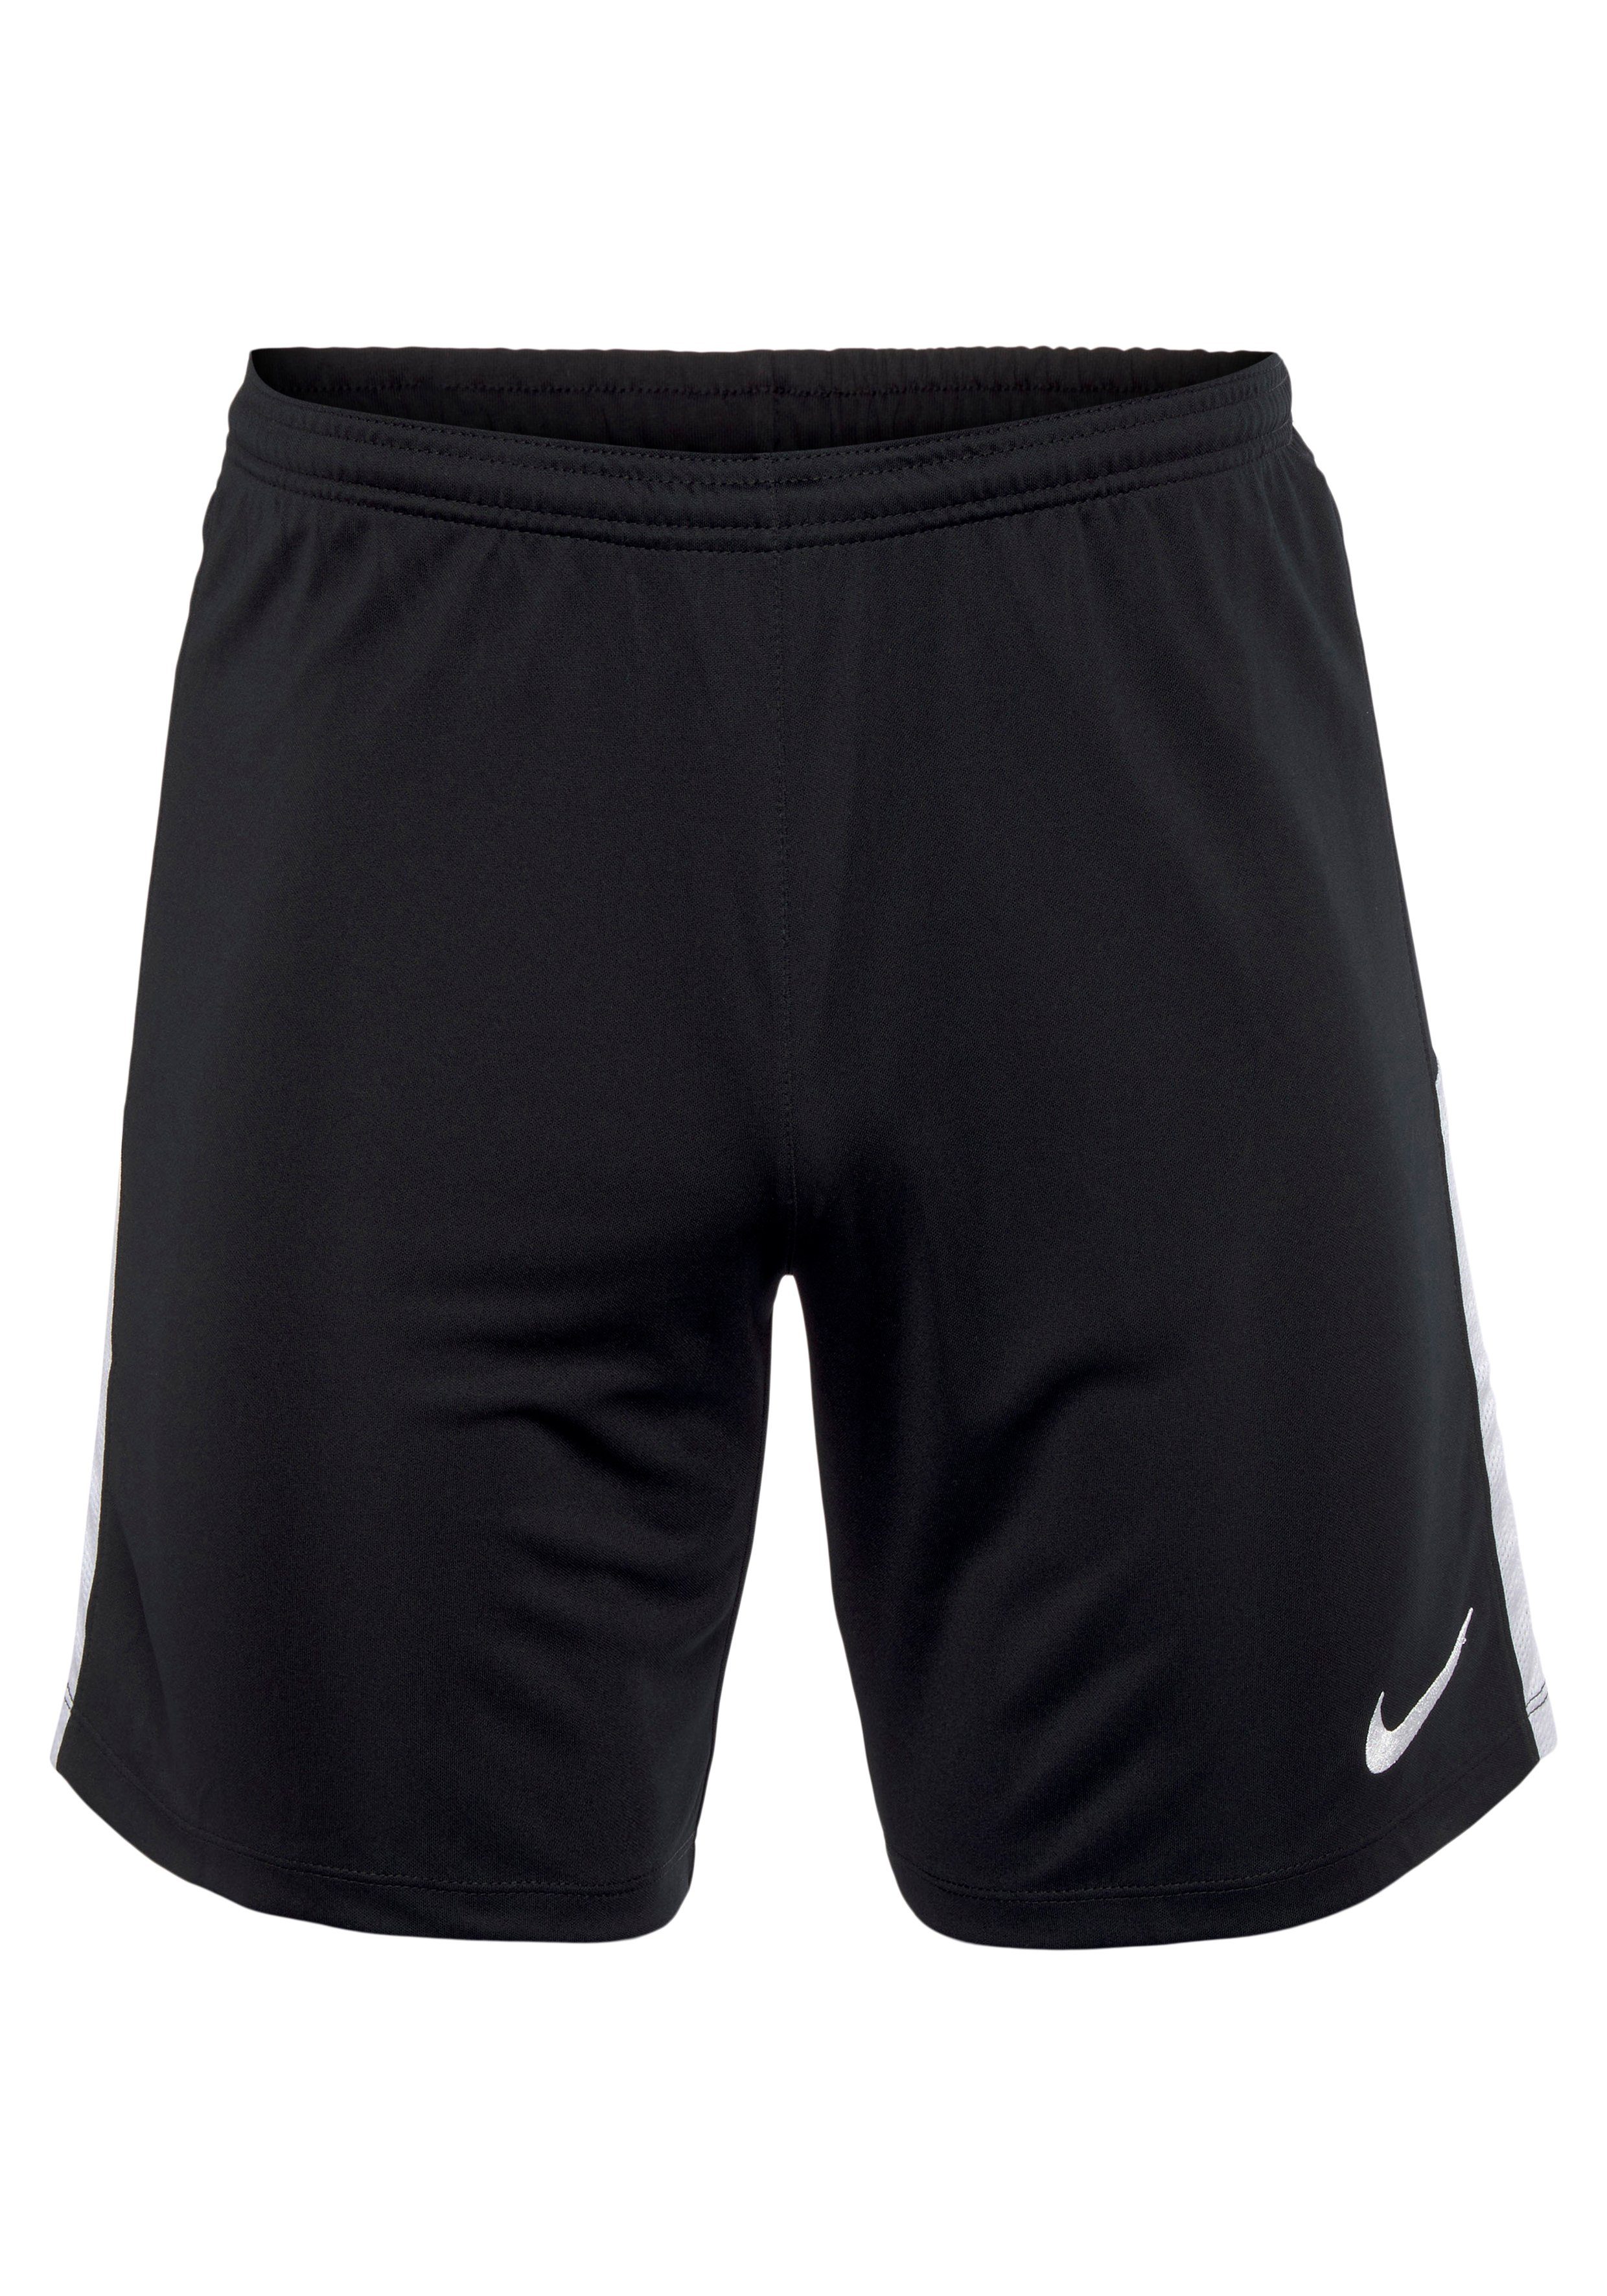 Nike Shorts Nike Short League Knit black/white